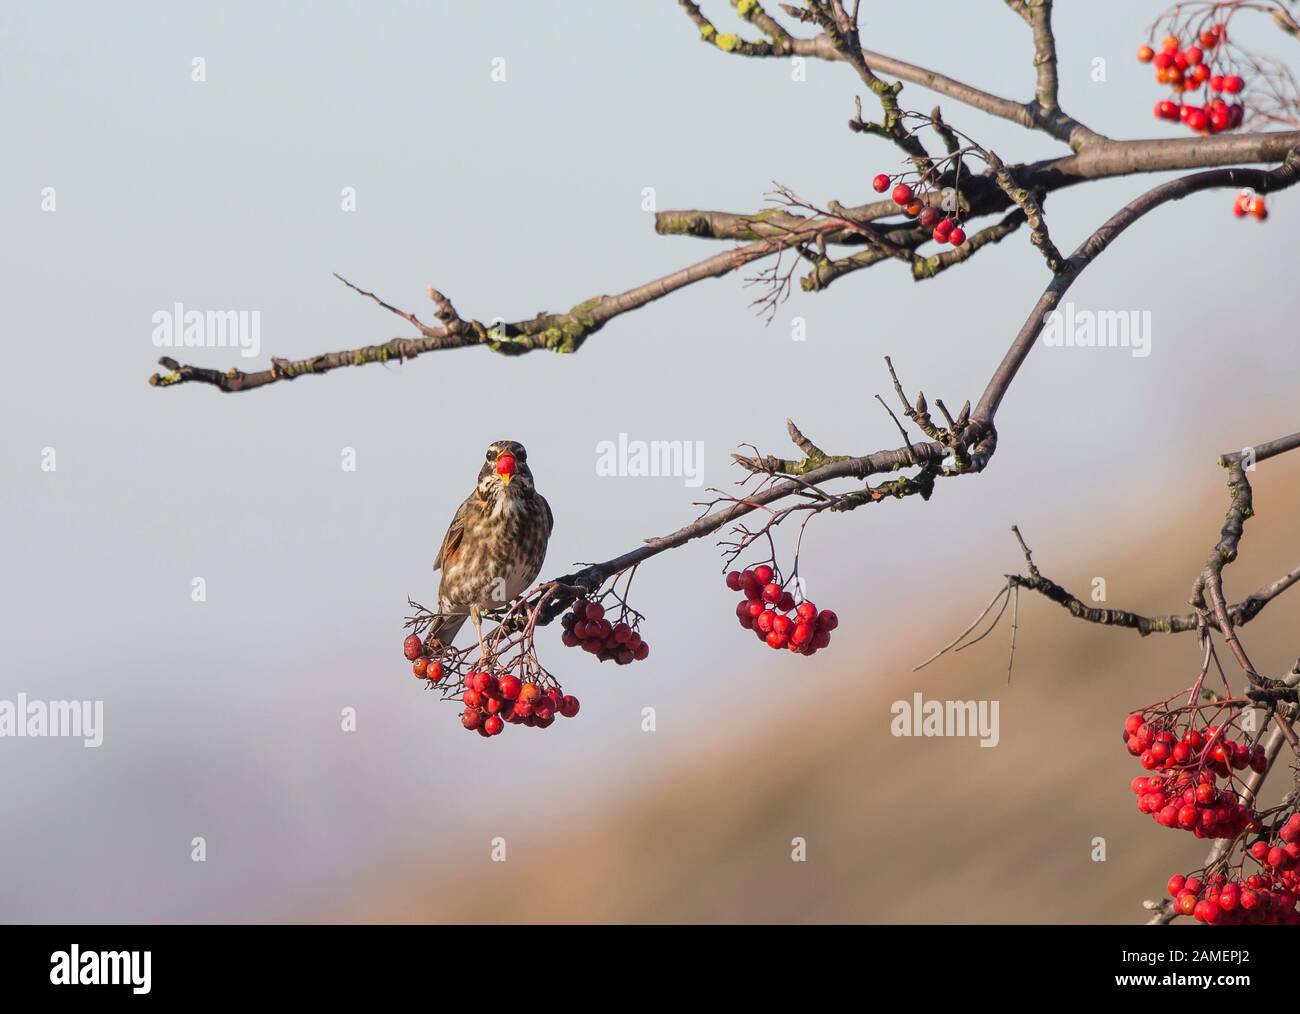 Gros plan sur l'oiseau sauvage de redwing au Royaume-Uni (Turdus iliacus) isolé à l'extérieur, perché sur la branche de l'arbre, mangeant des baies sous le soleil d'hiver. Oiseaux britanniques. Banque D'Images